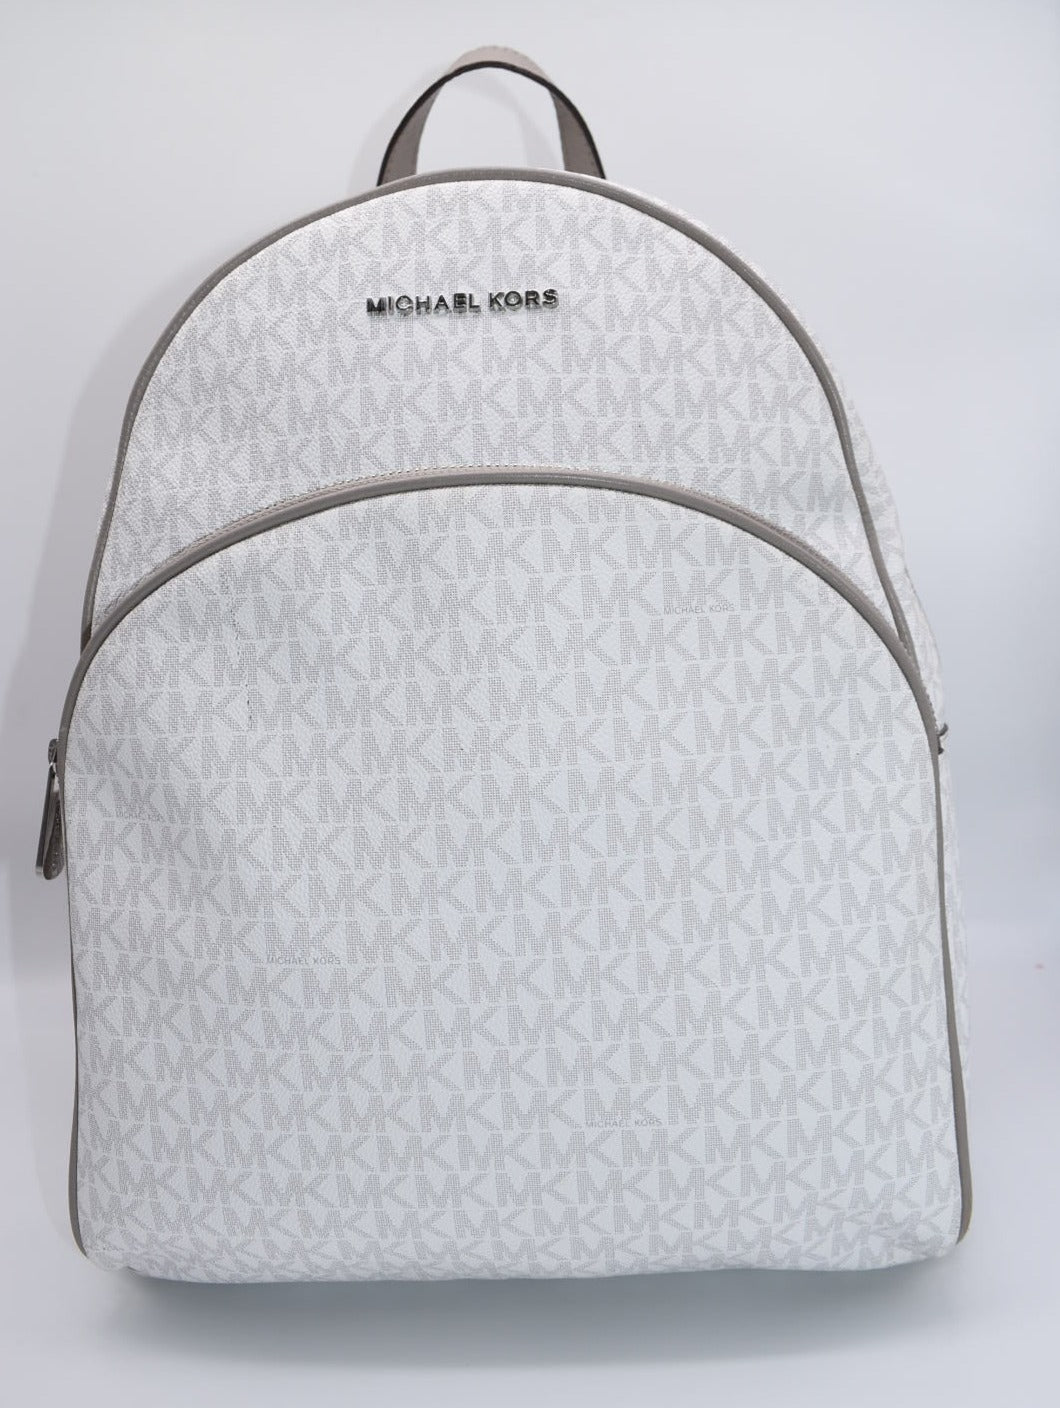 MIchael Kors Abbey Large Logo Backpack